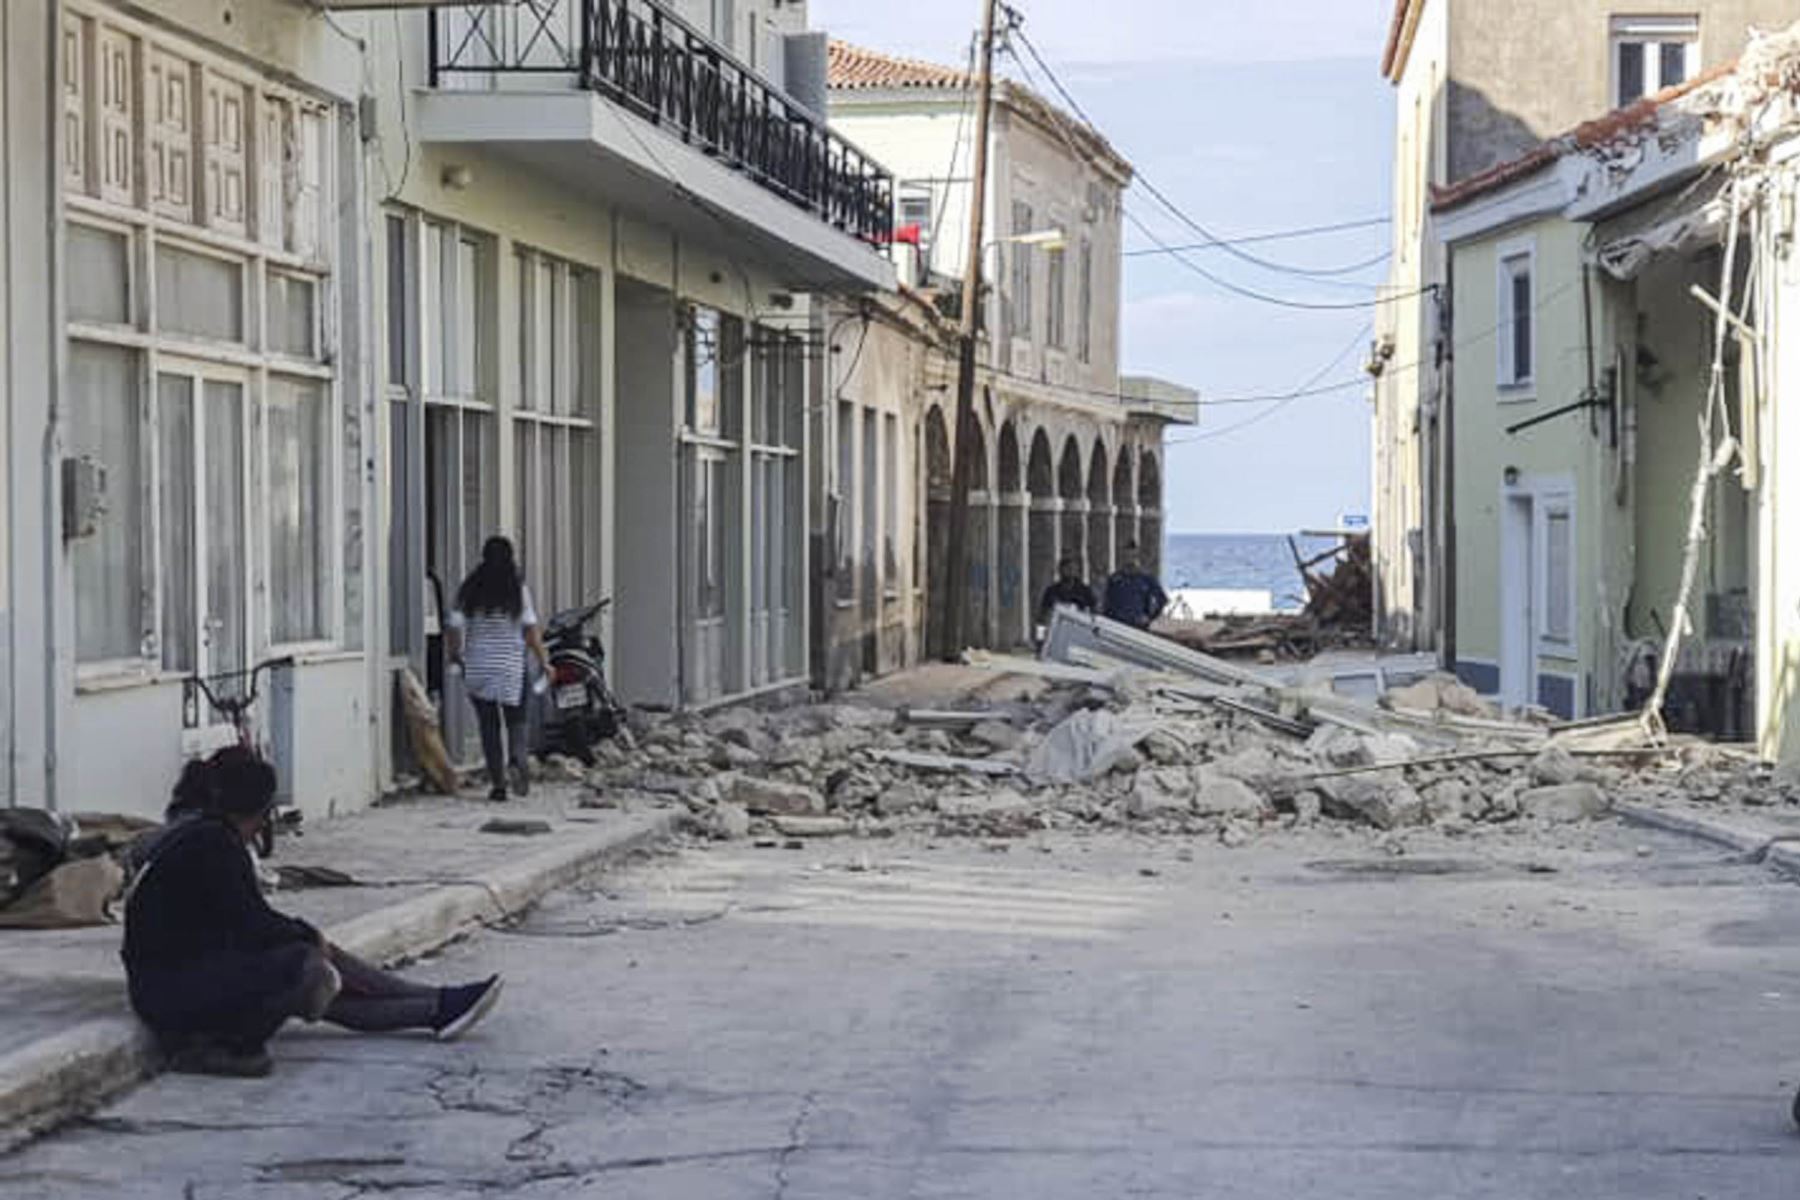 La gente pasa junto a una casa destruida después de un terremoto en la isla de Samos en Grecia. Foto: AFP